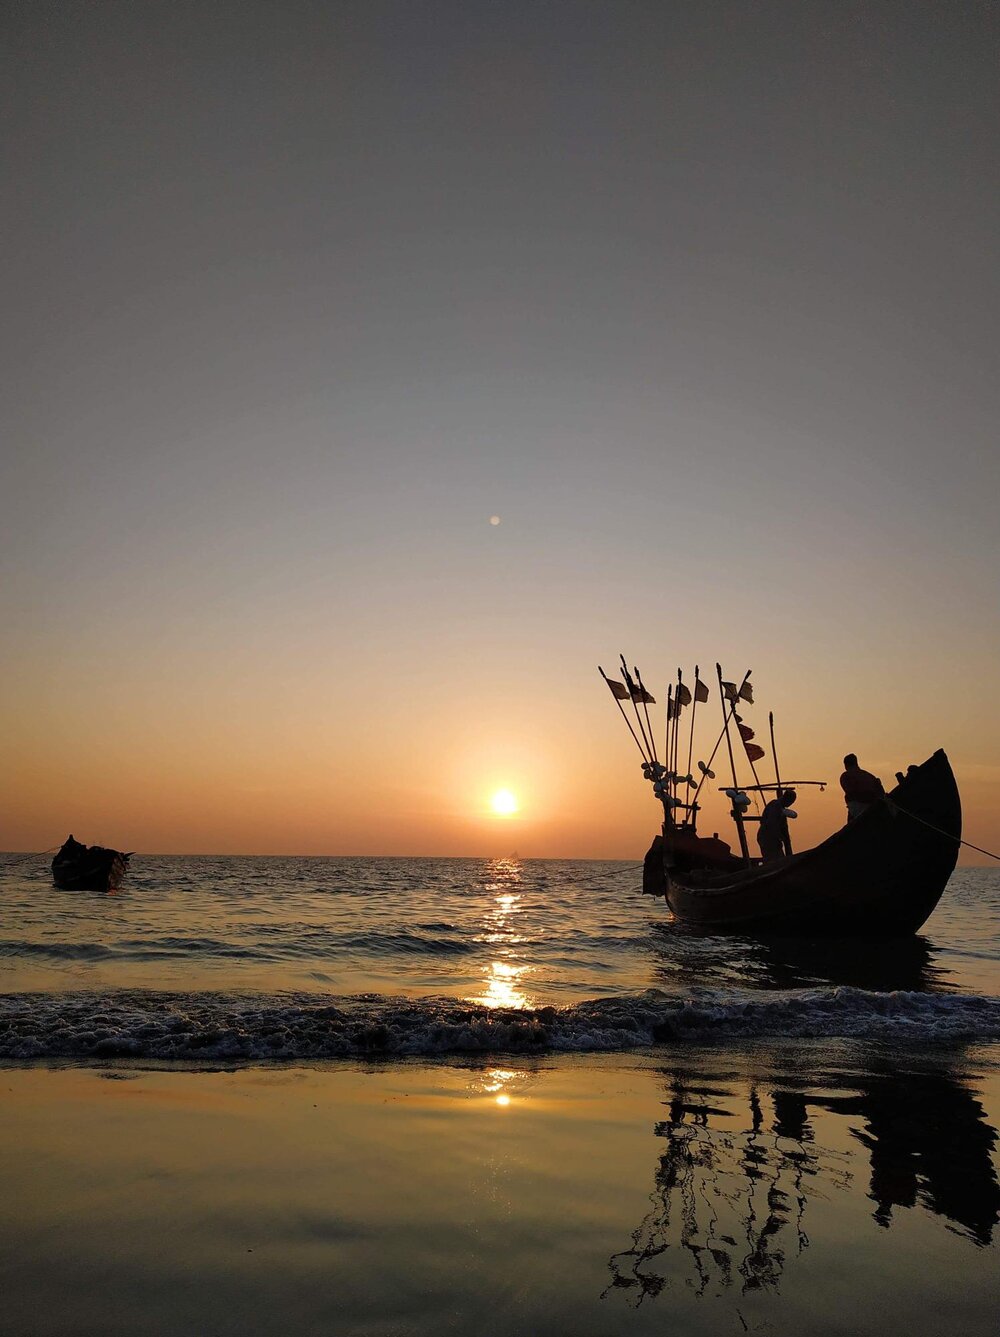 Sonnenuntergang am Meer in Bangladesch